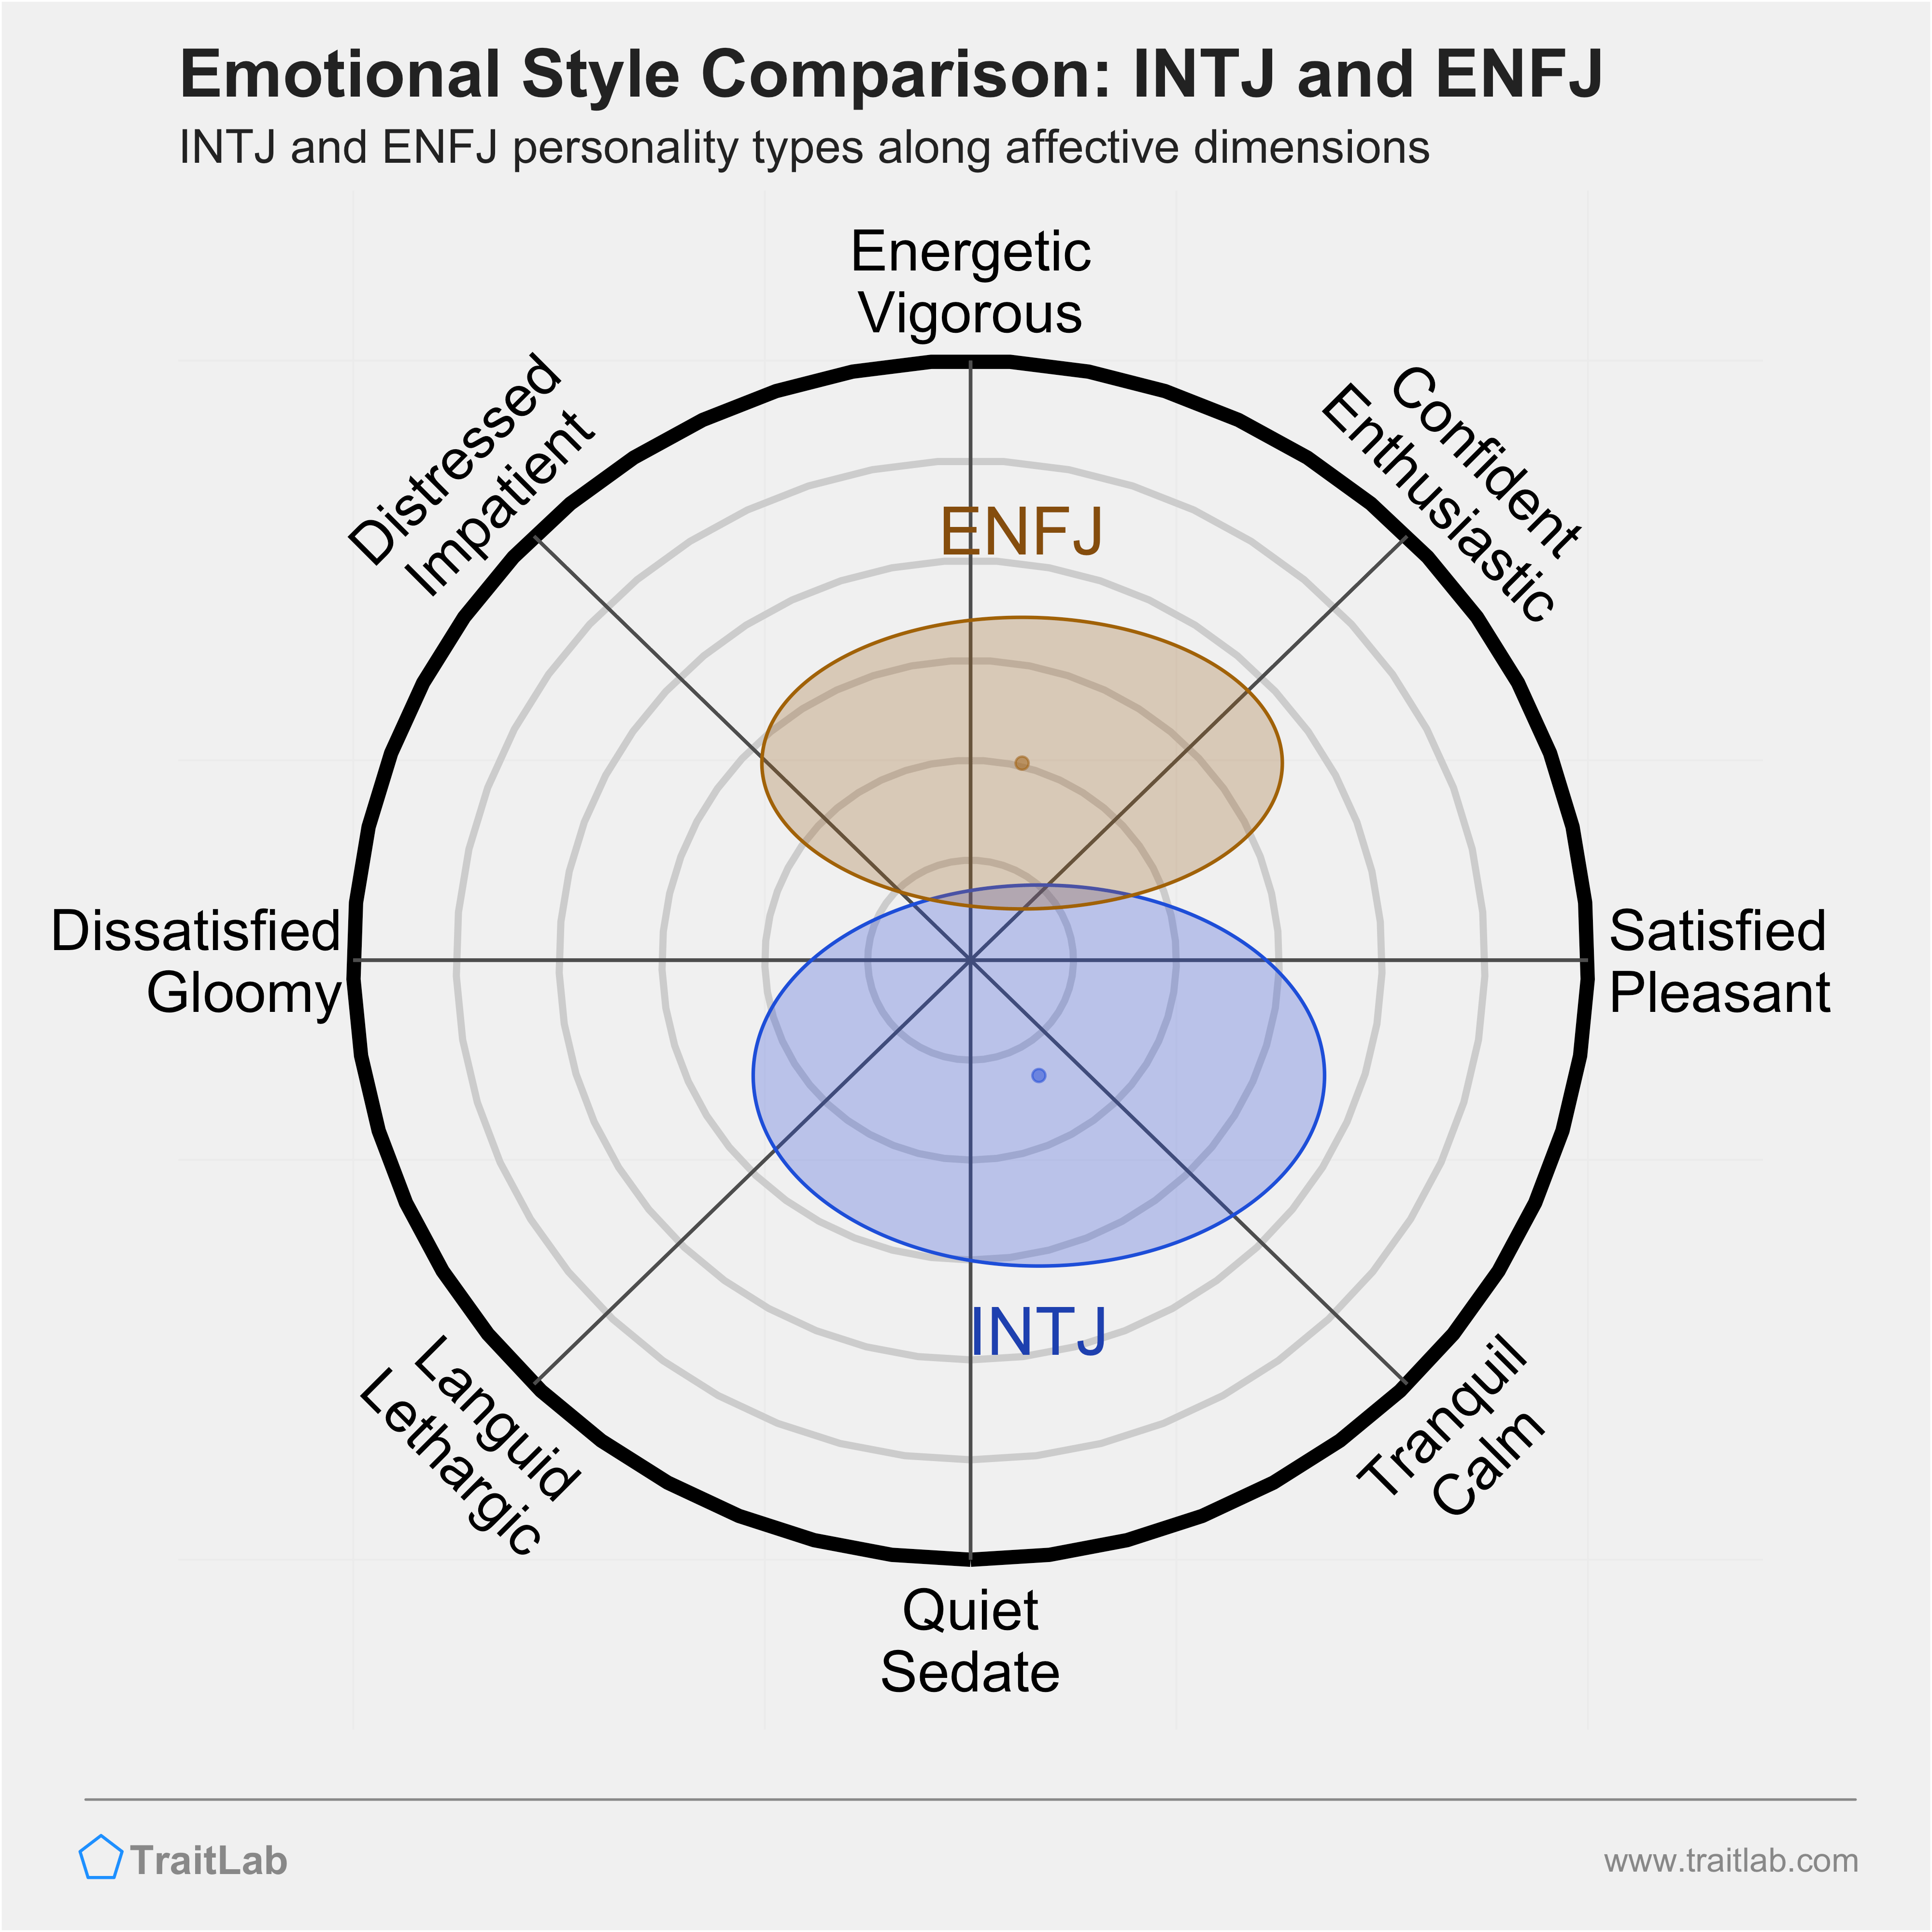 INTJ and ENFJ comparison across emotional (affective) dimensions